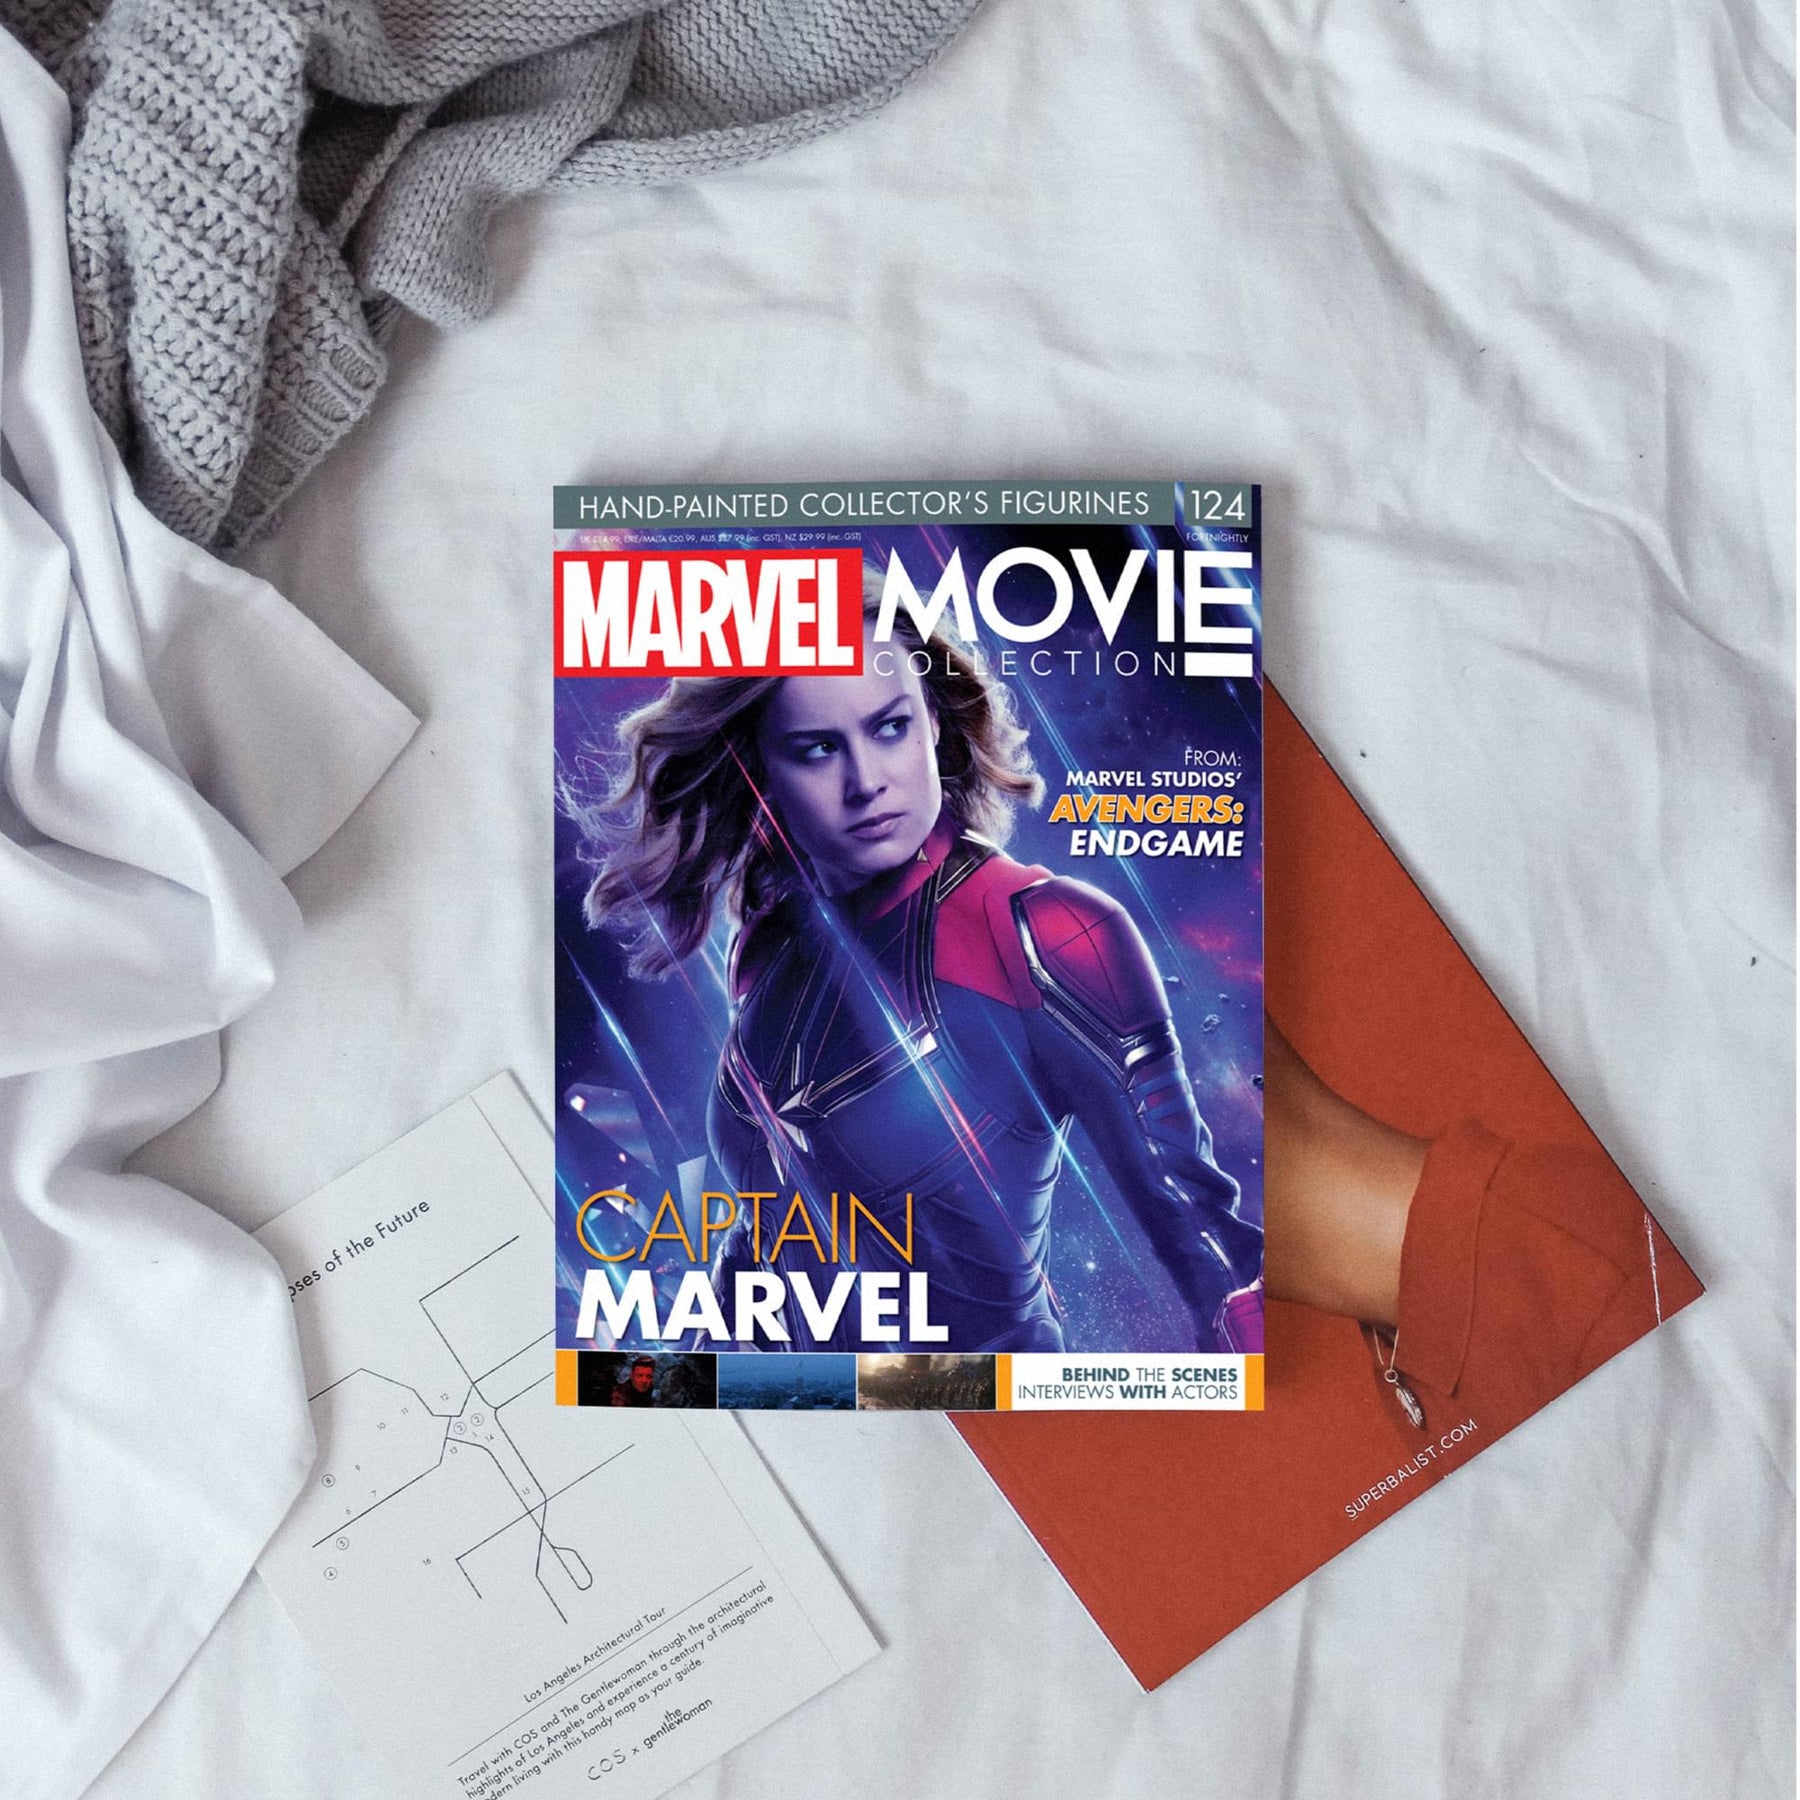 Eaglemoss Marvel Movie Collection Magazine Issue #124 Endgame Captain Marvel New